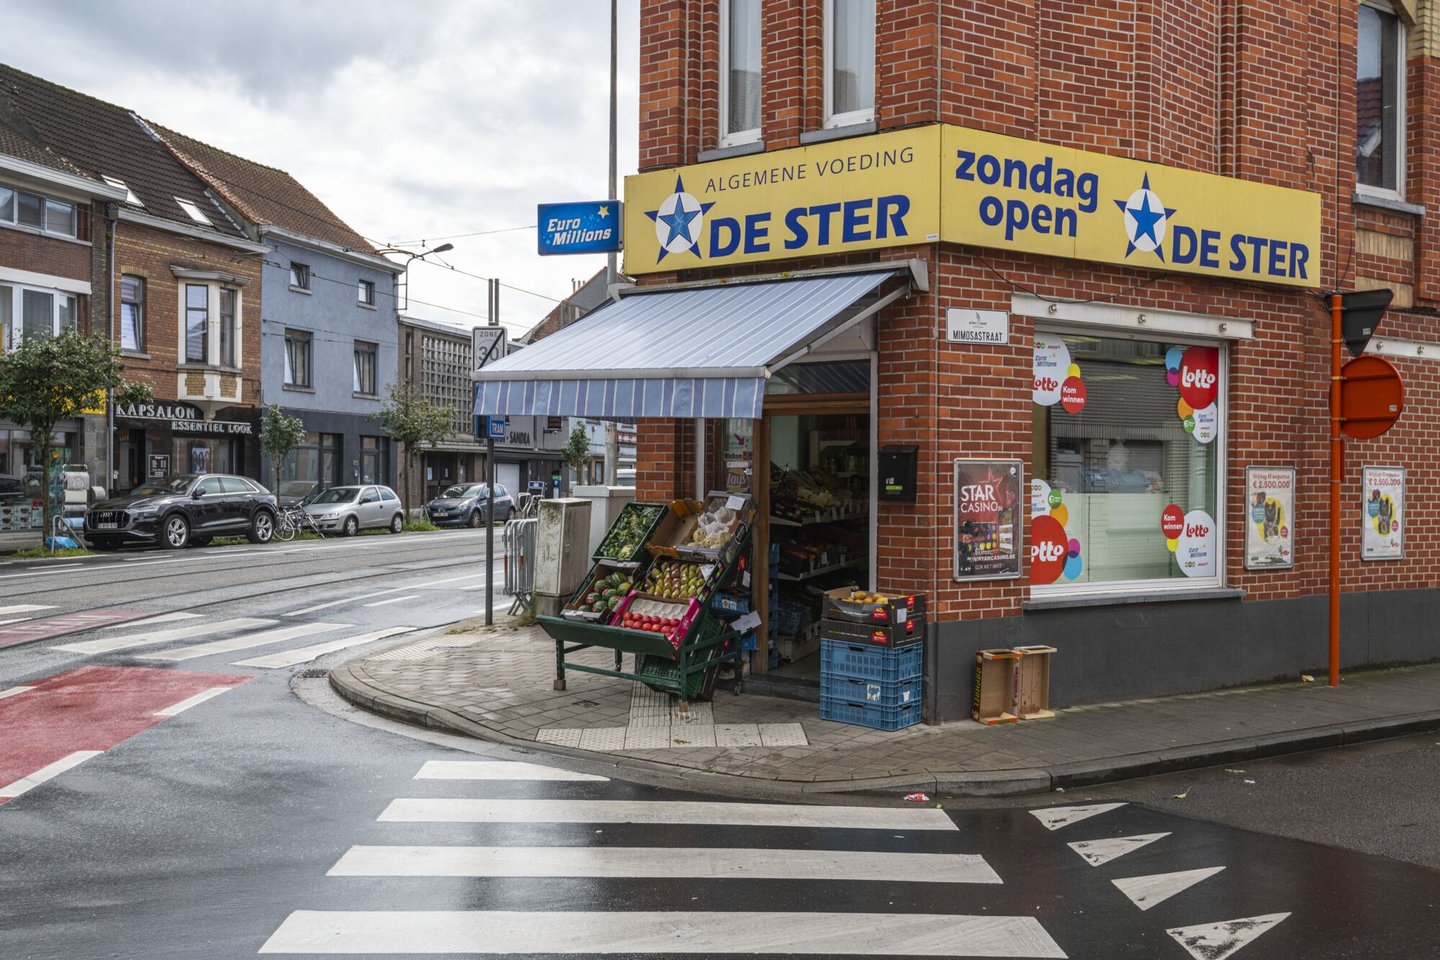 Etalage van De Ster, een winkel van algemene voeding in Gent